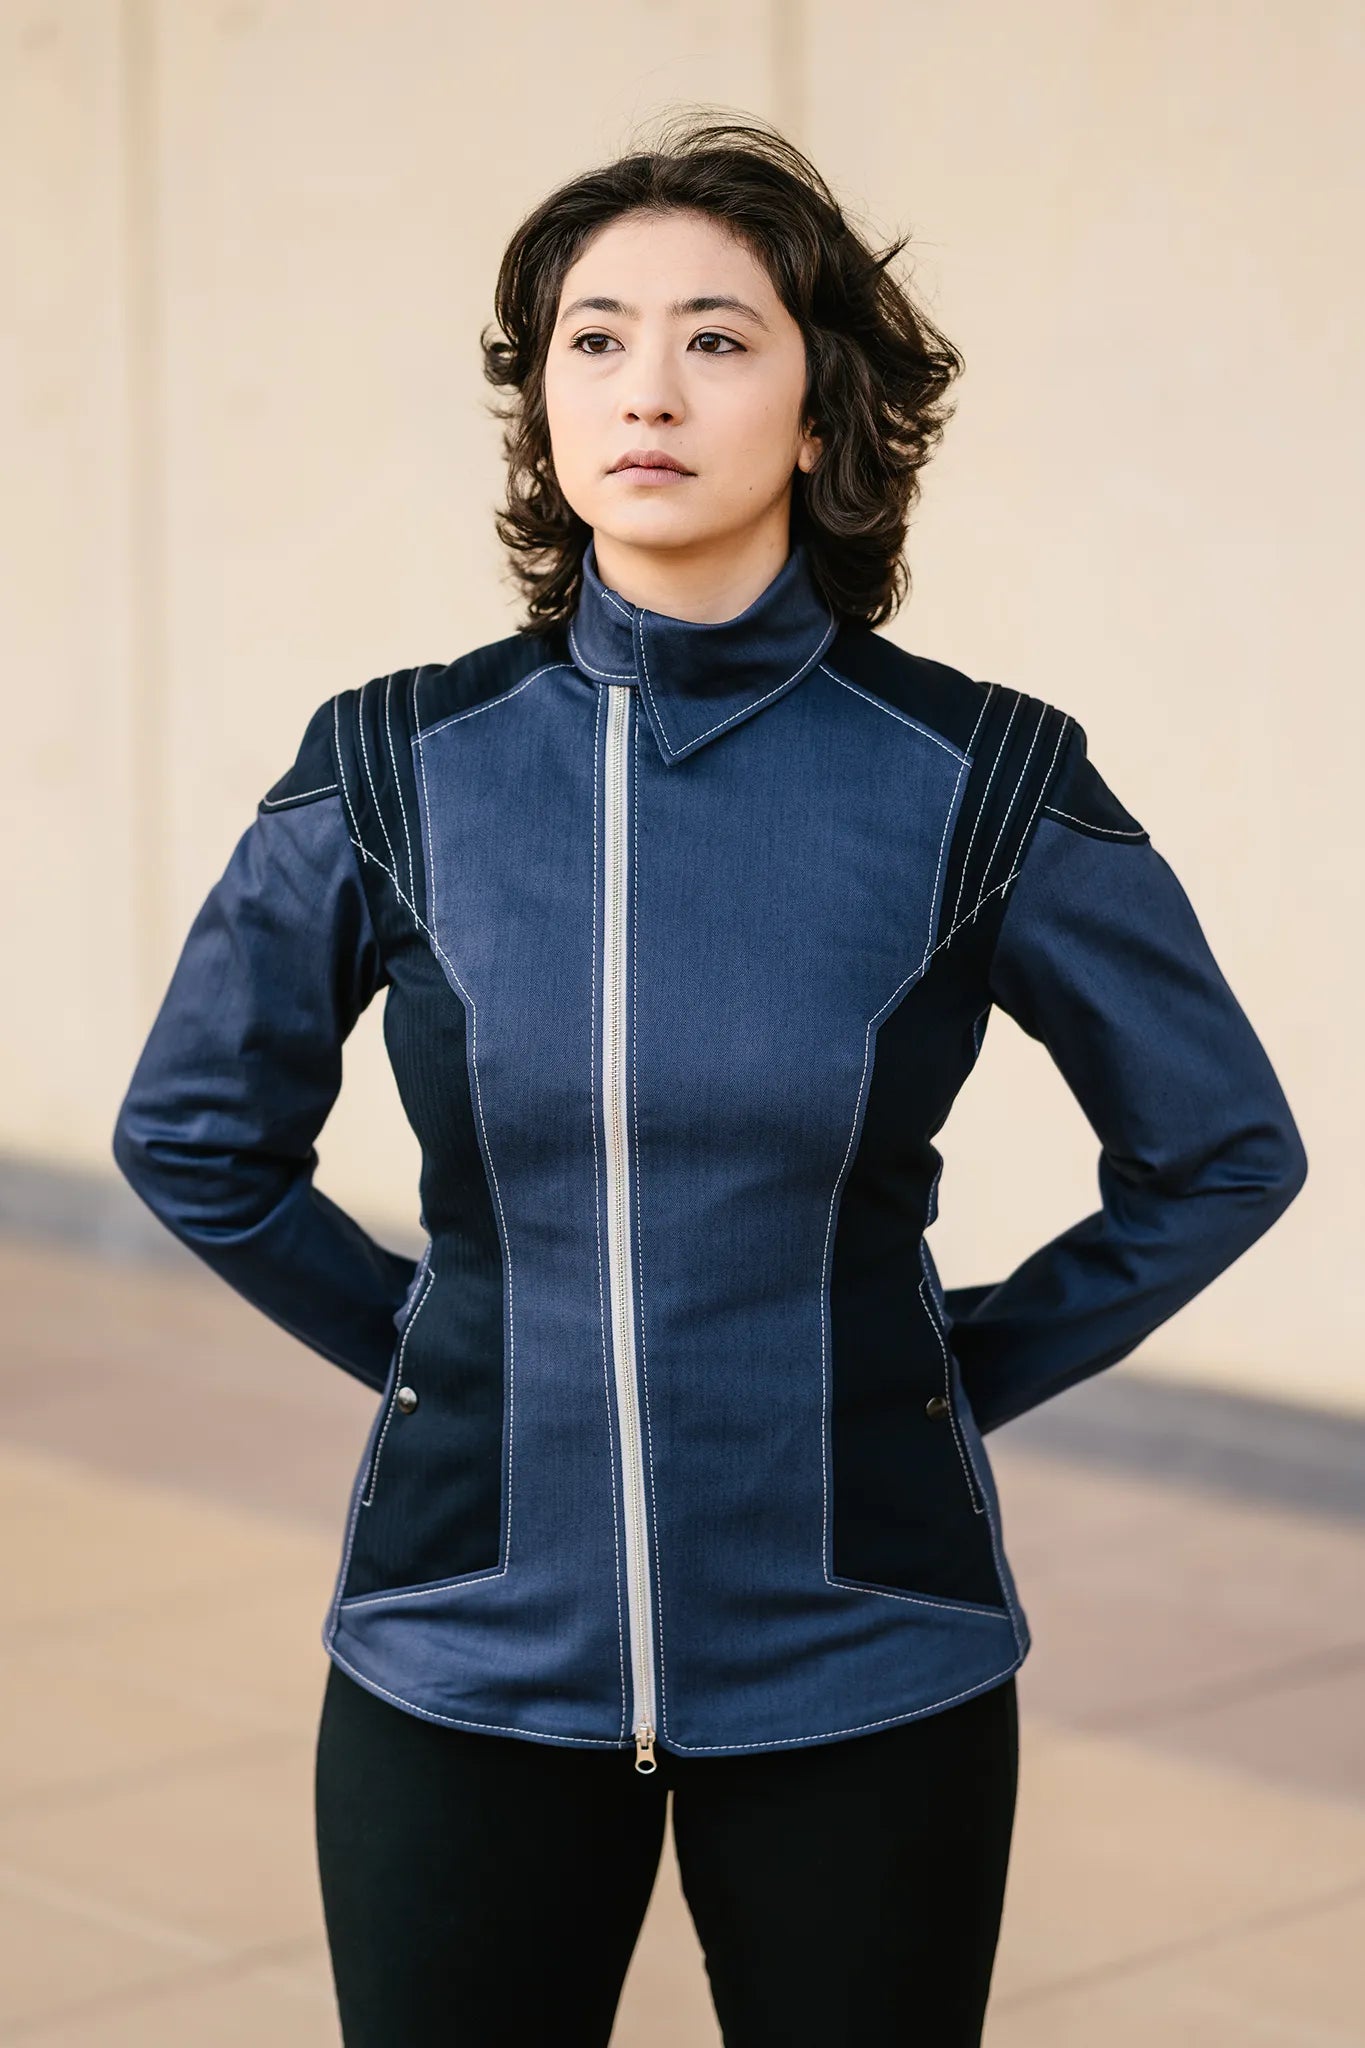 Starfleet 2256 - Sciences Silver [Womens]